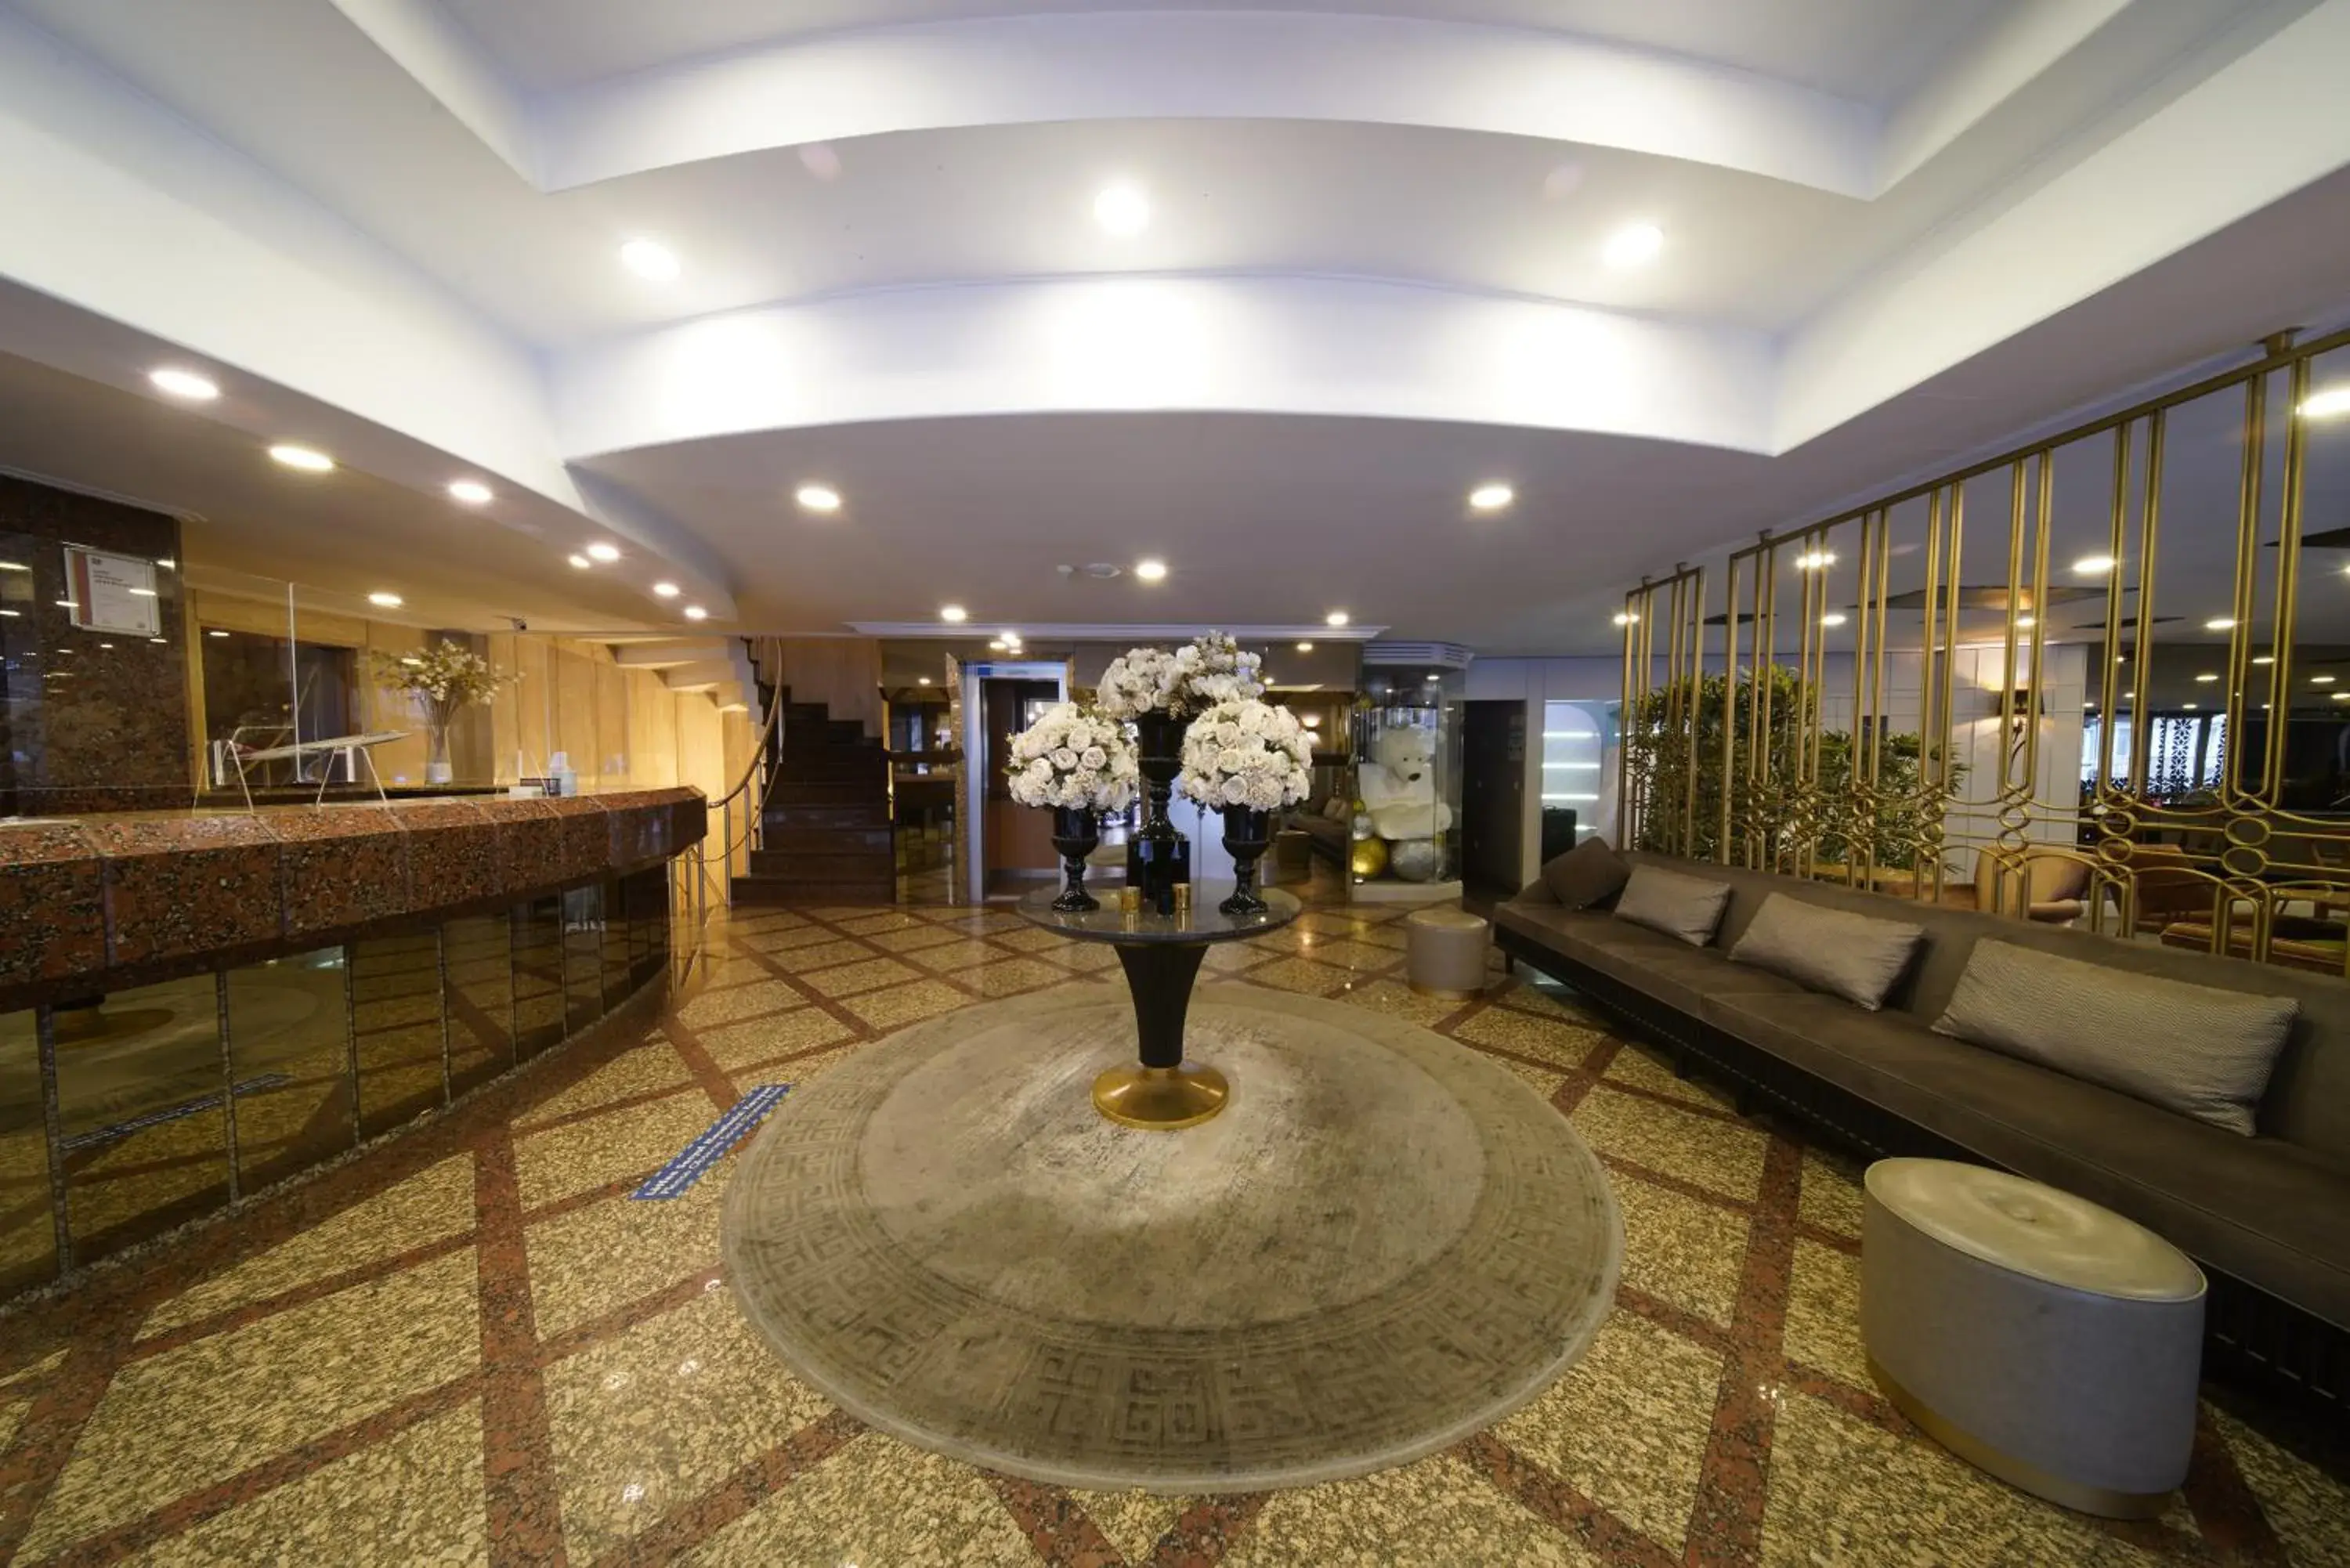 Lobby or reception, Lobby/Reception in All Seasons Hotel